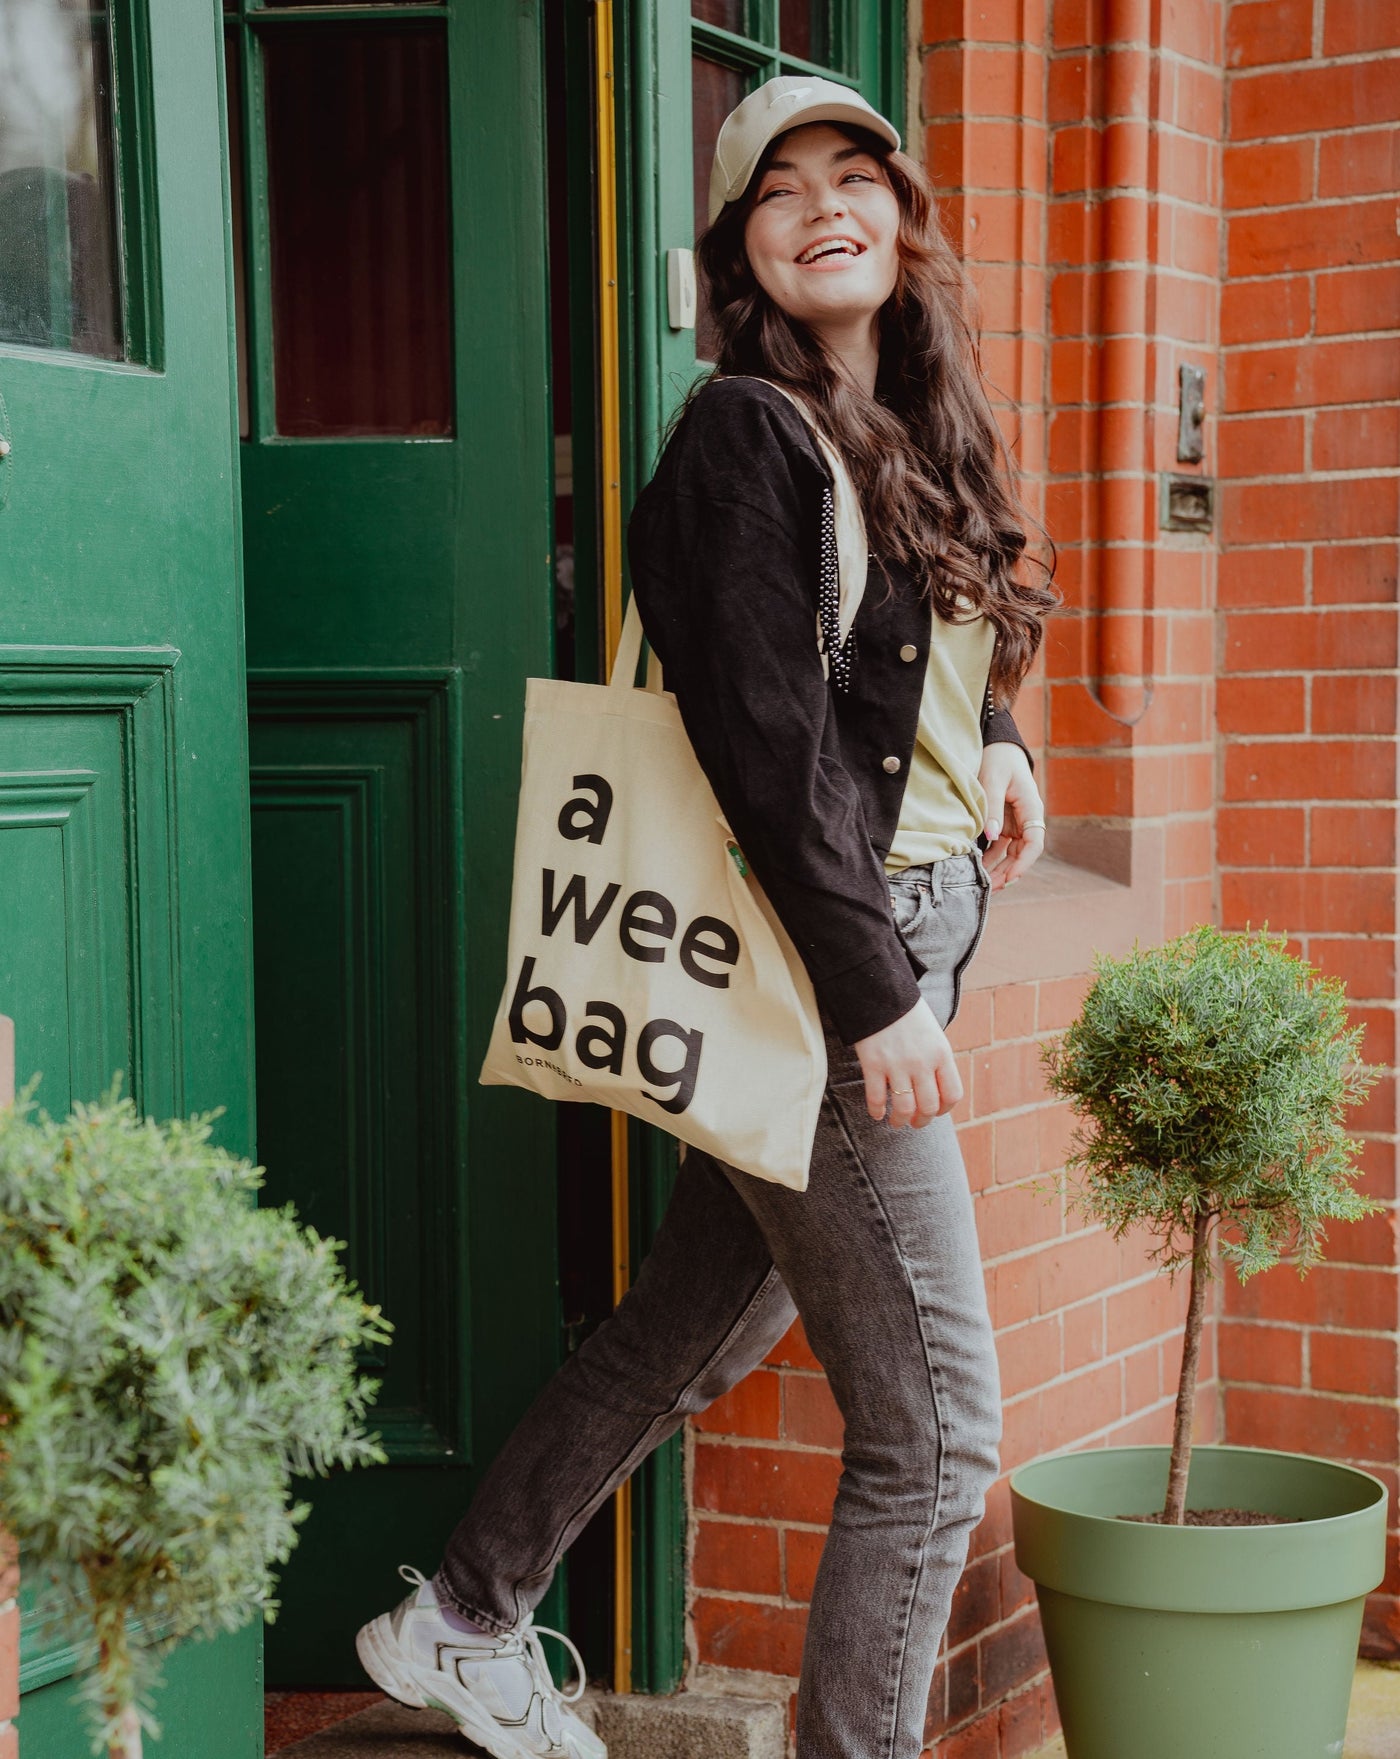 A Wee Bag Tote Bag